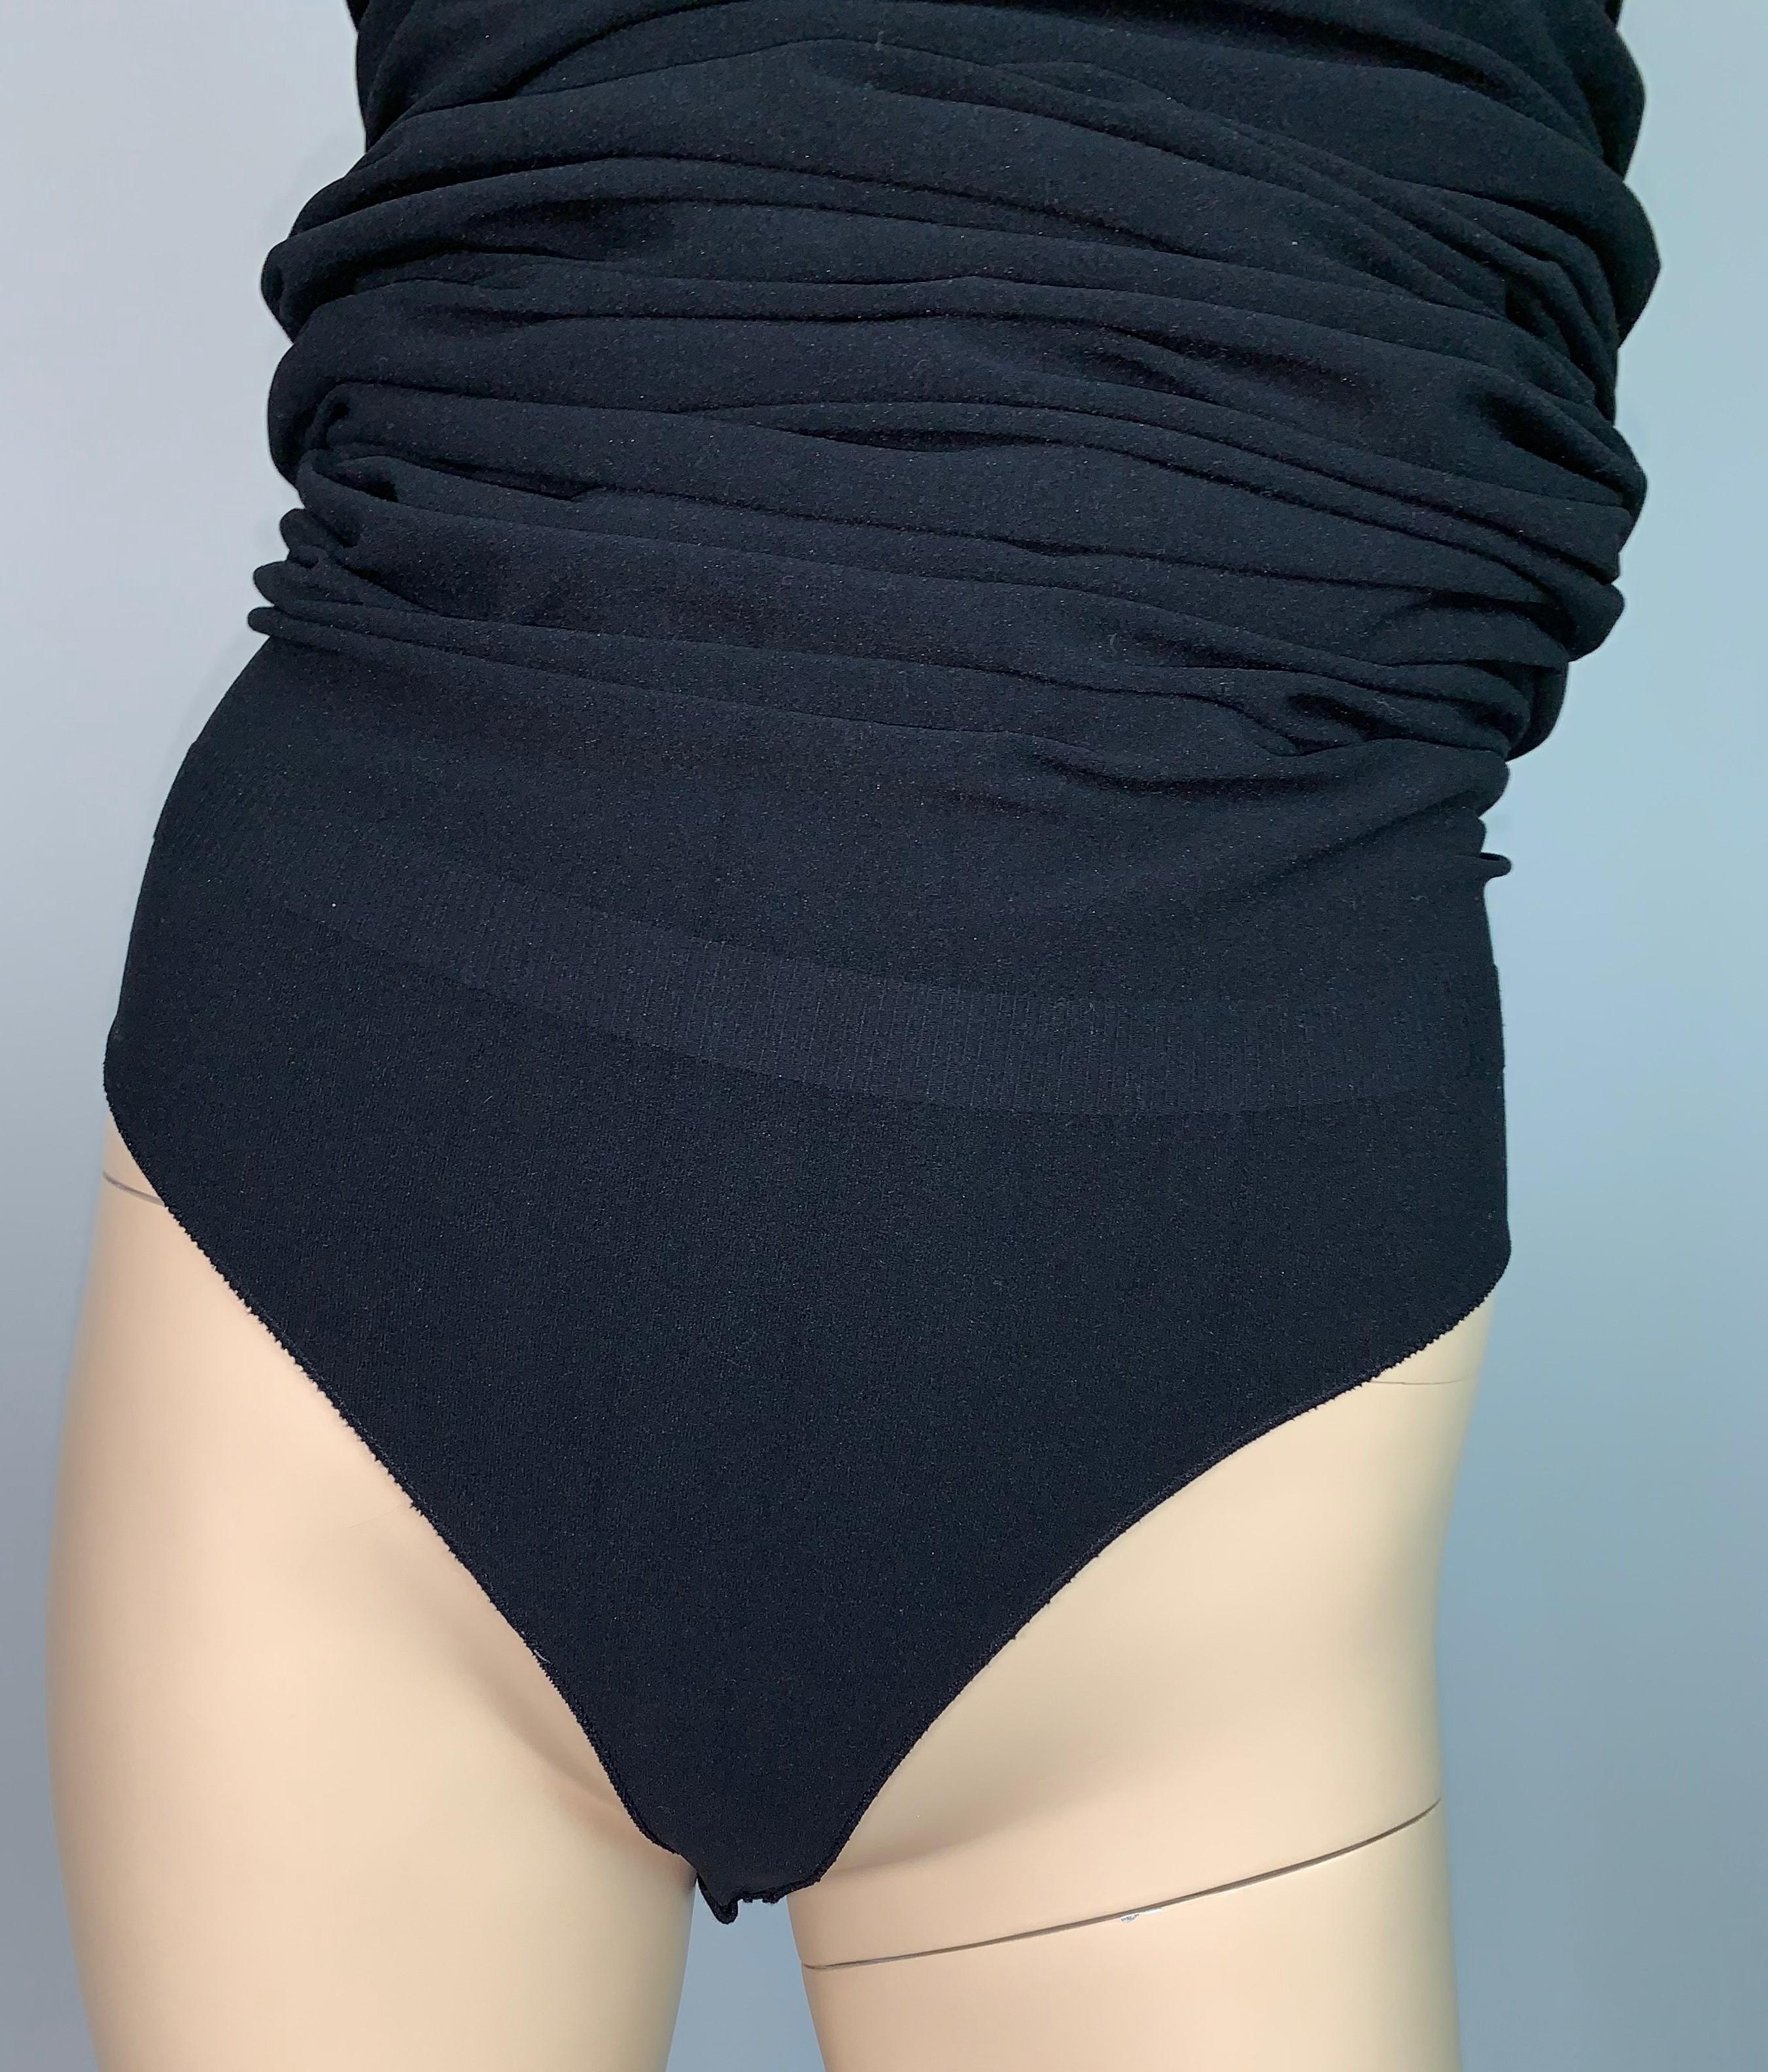 Women's S/S 2011 Yves Saint Laurent Black Nylon Bodystocking Wiggle Dress Skirt M